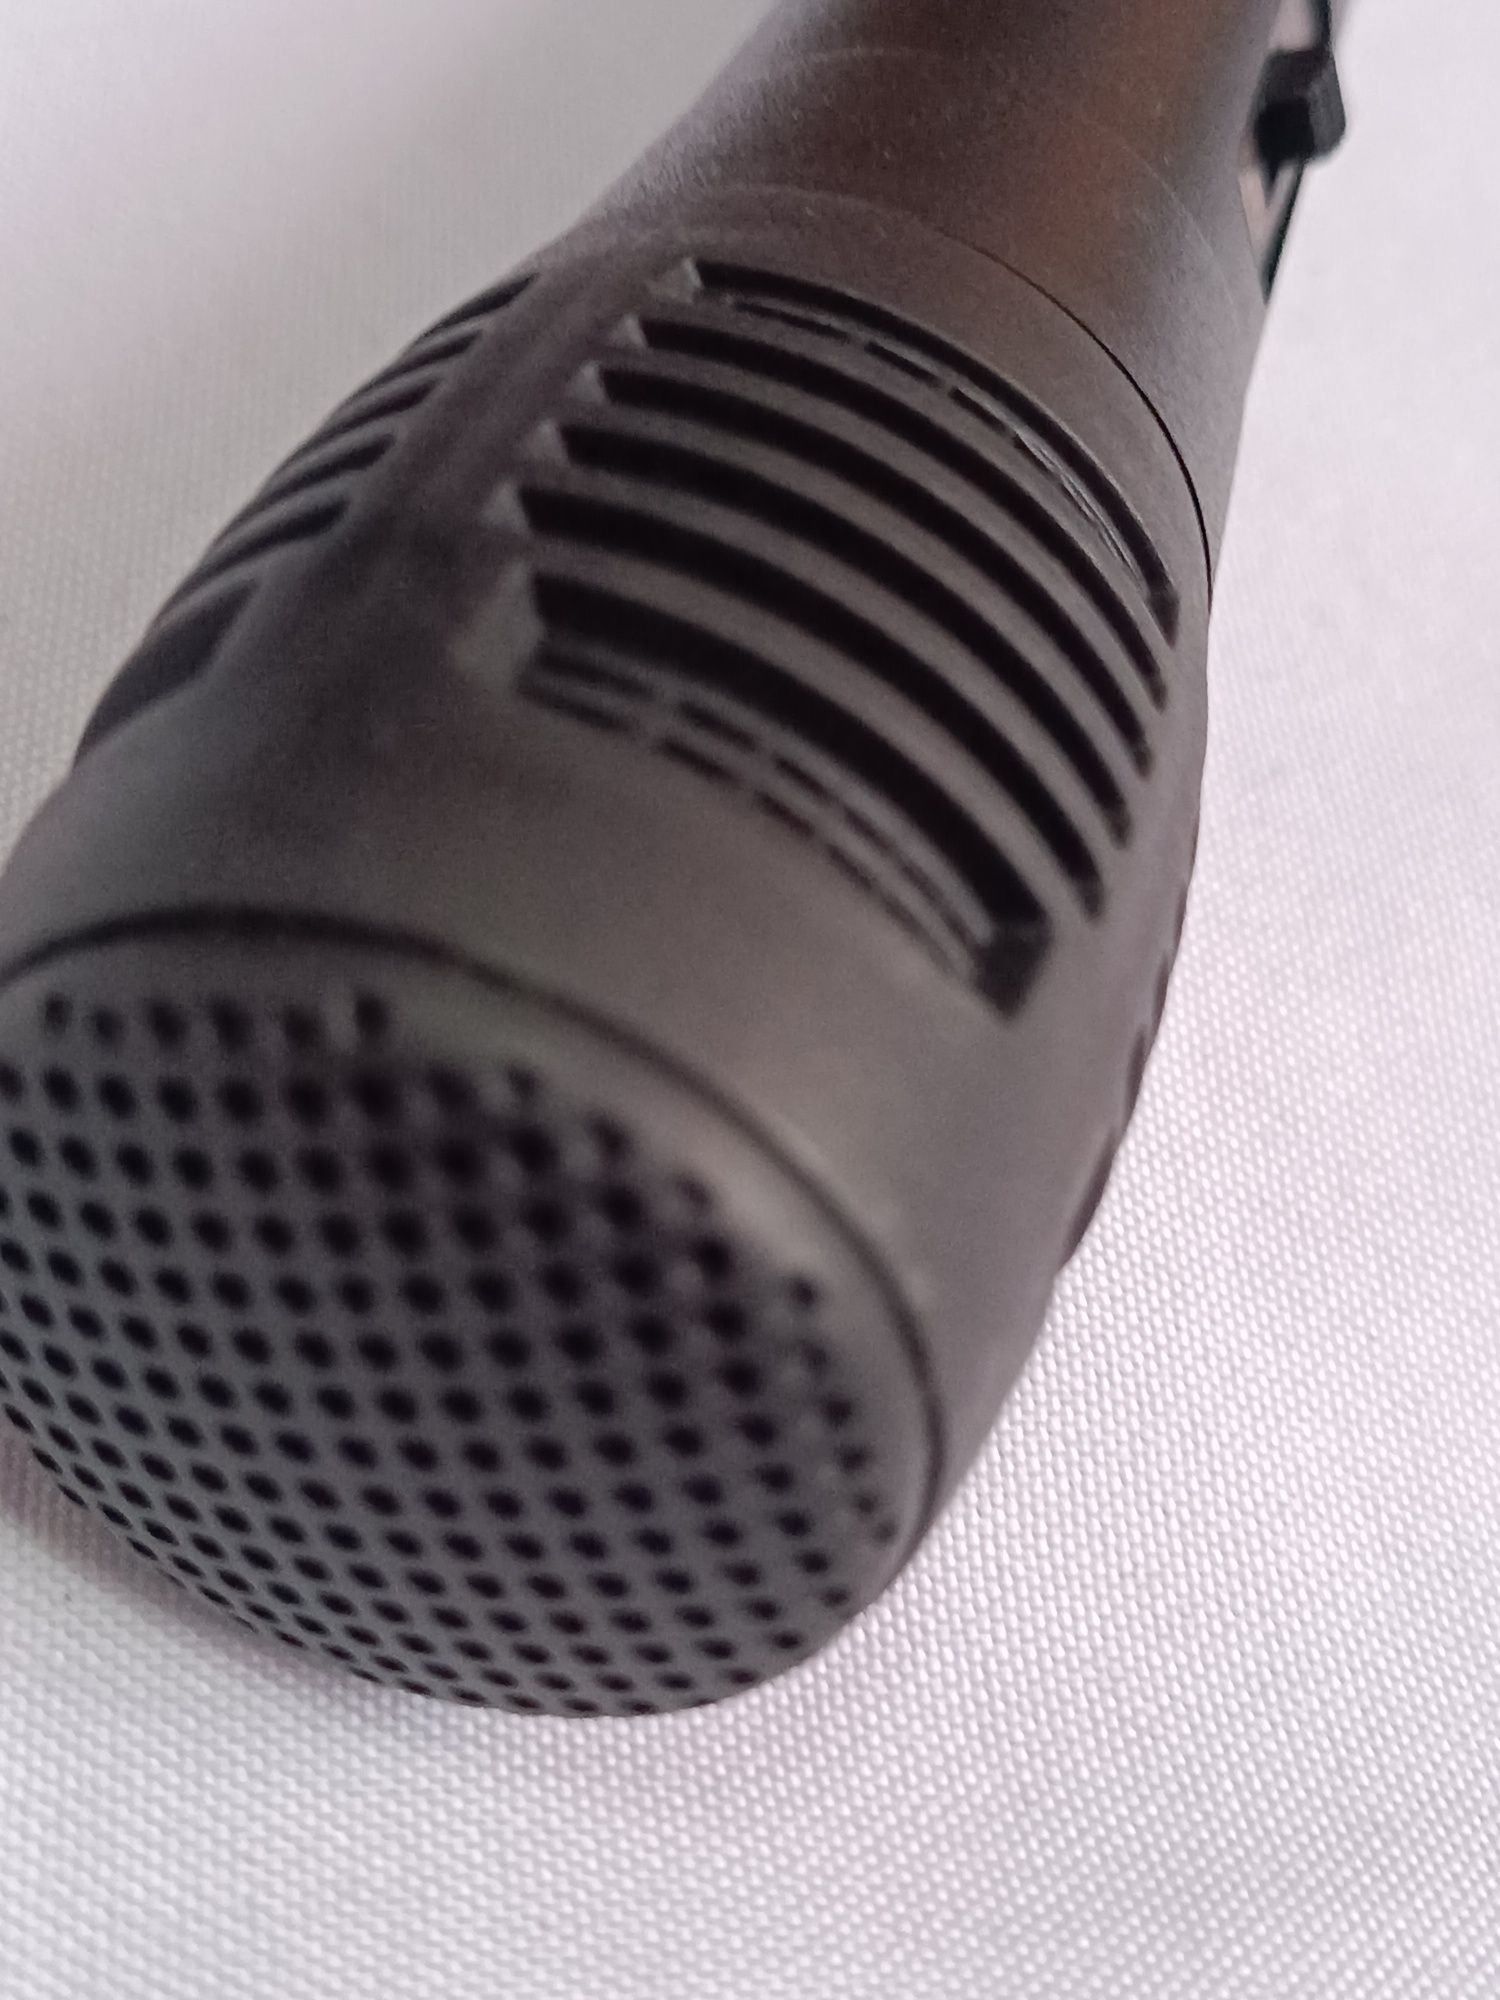 Новый микрофон караоке,черный